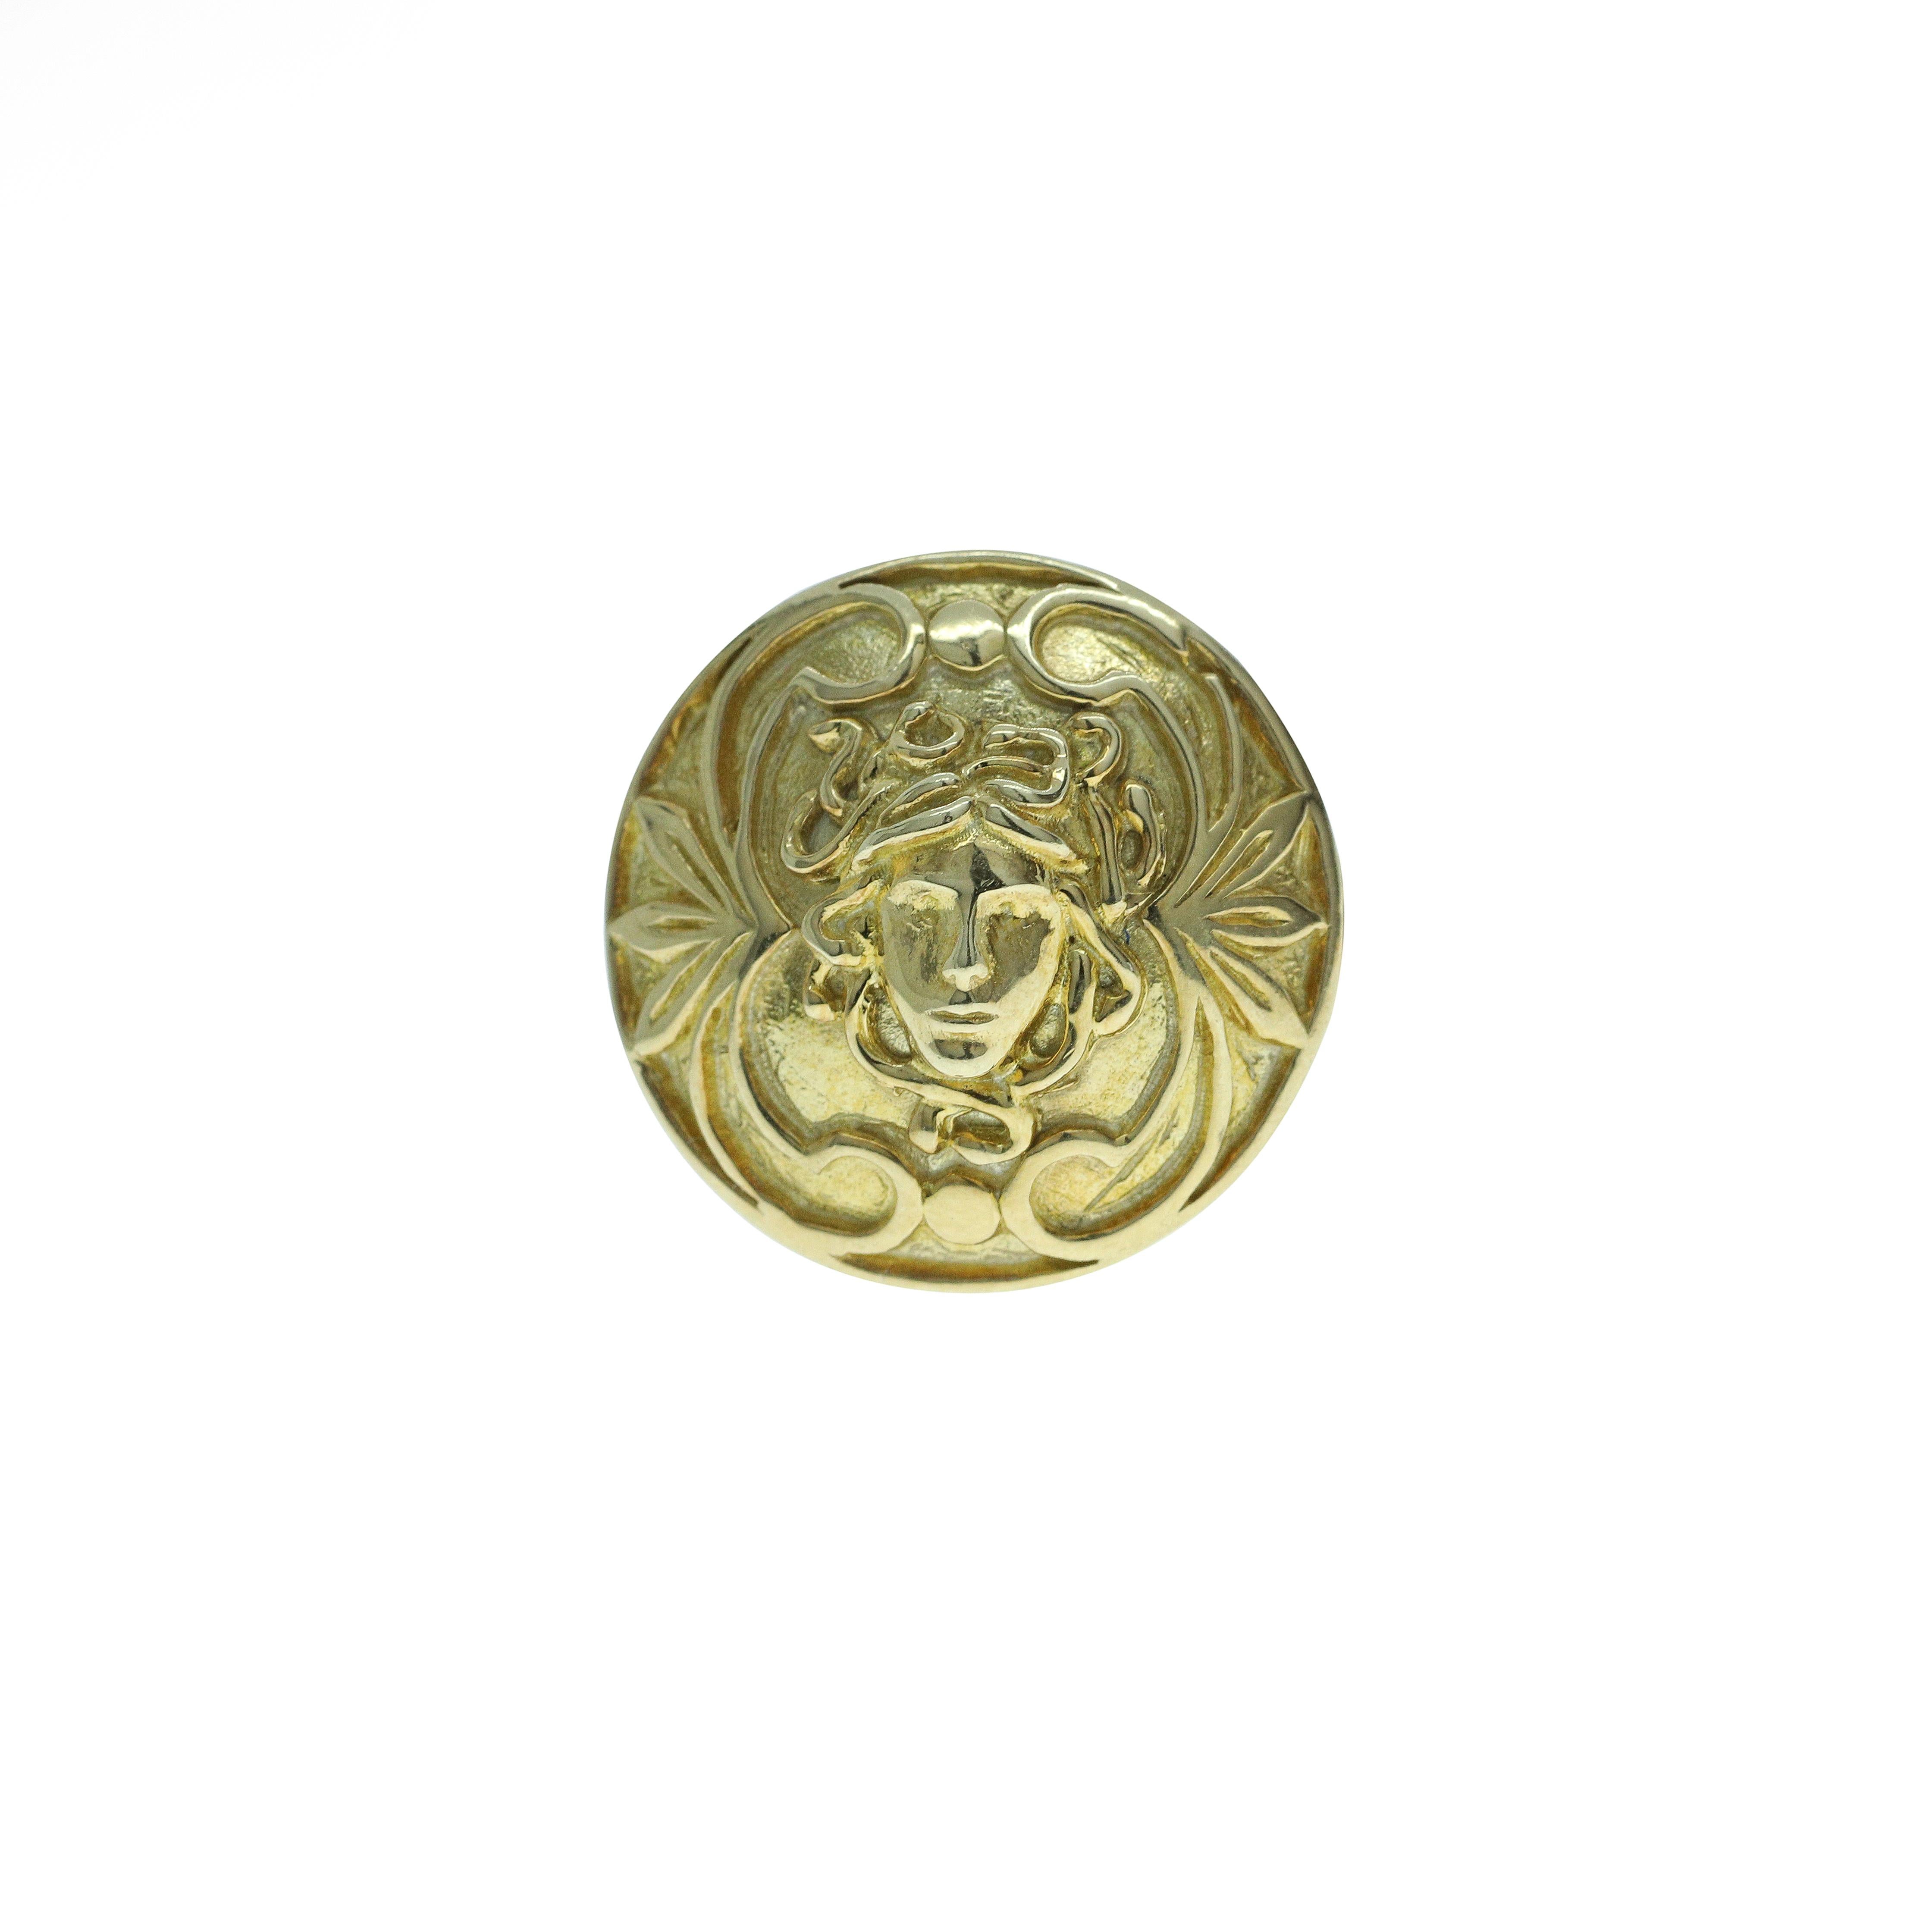 Une paire vibrante de boutons de manchette inspirés de Medusa, créés entièrement à la main à partir d'argent 925 électroplaqué en jaune. Les boutons de manchette mesurent environ 1,5 centimètre de diamètre. 

Elles sont également disponibles en